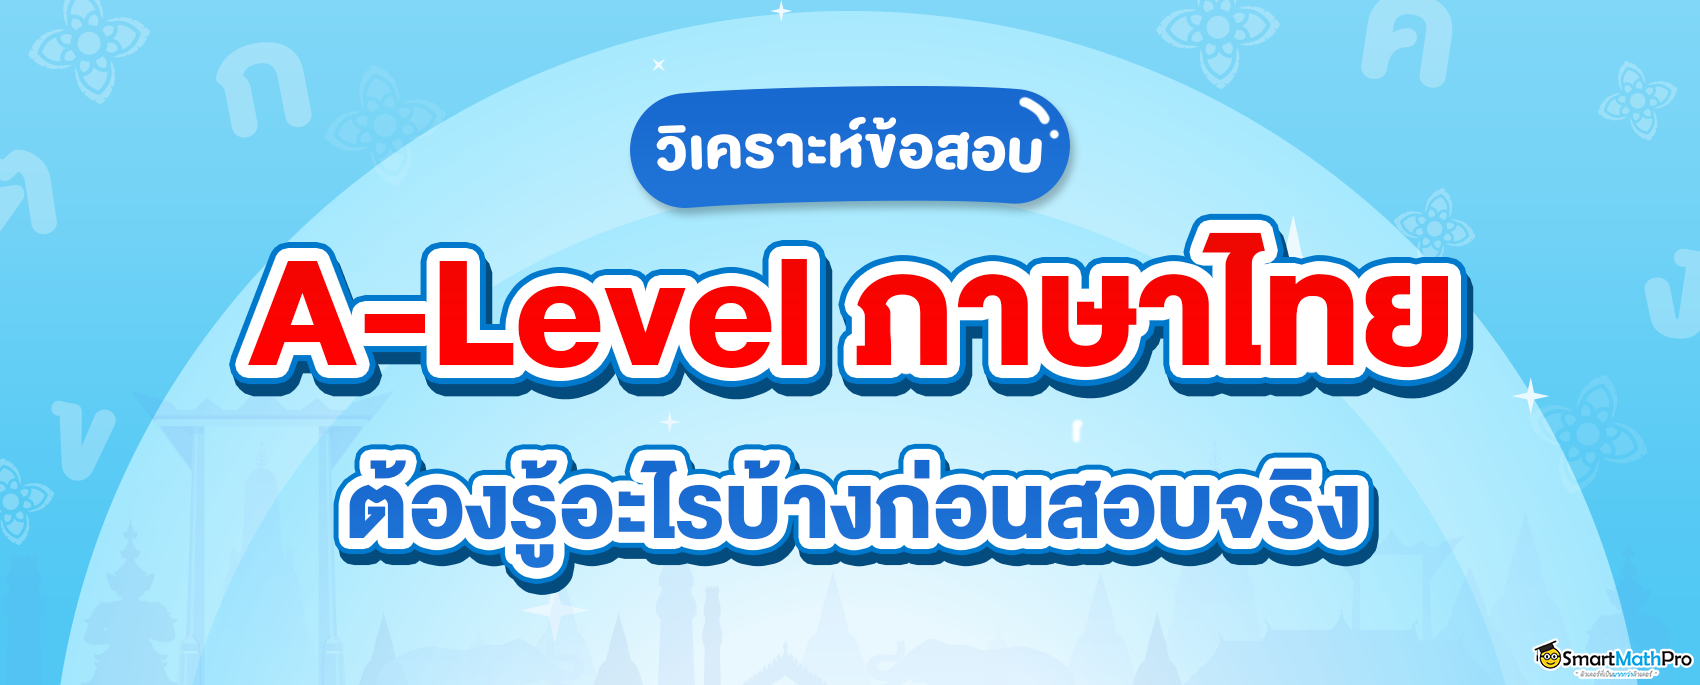 A-Level ภาษาไทย ต้องรู้อะไรบ้างก่อนสอบจริง